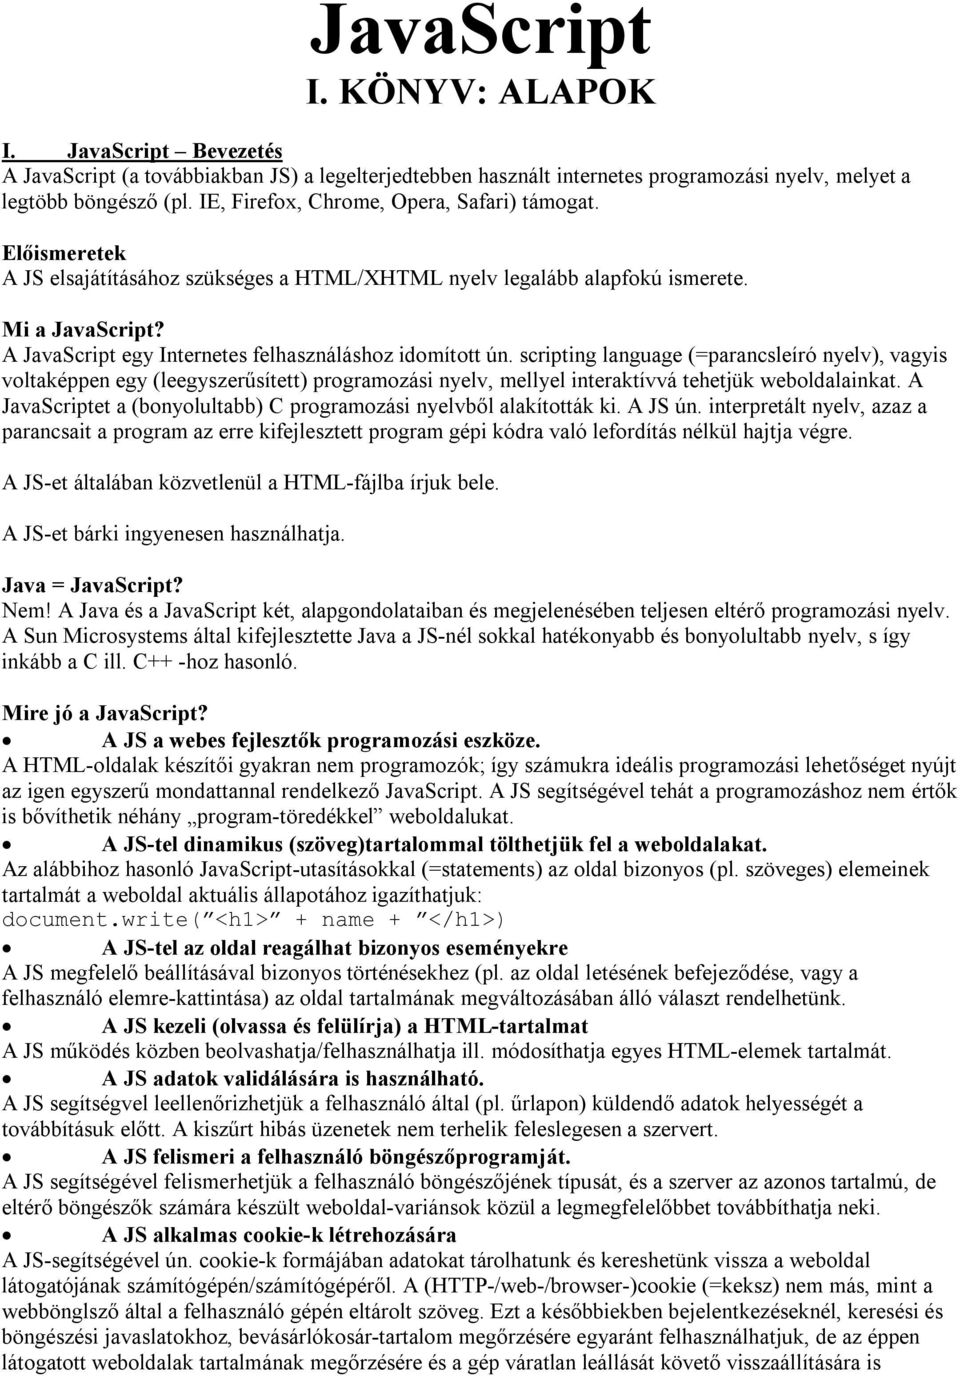 JavaScript I. KÖNYV: ALAPOK - PDF Ingyenes letöltés